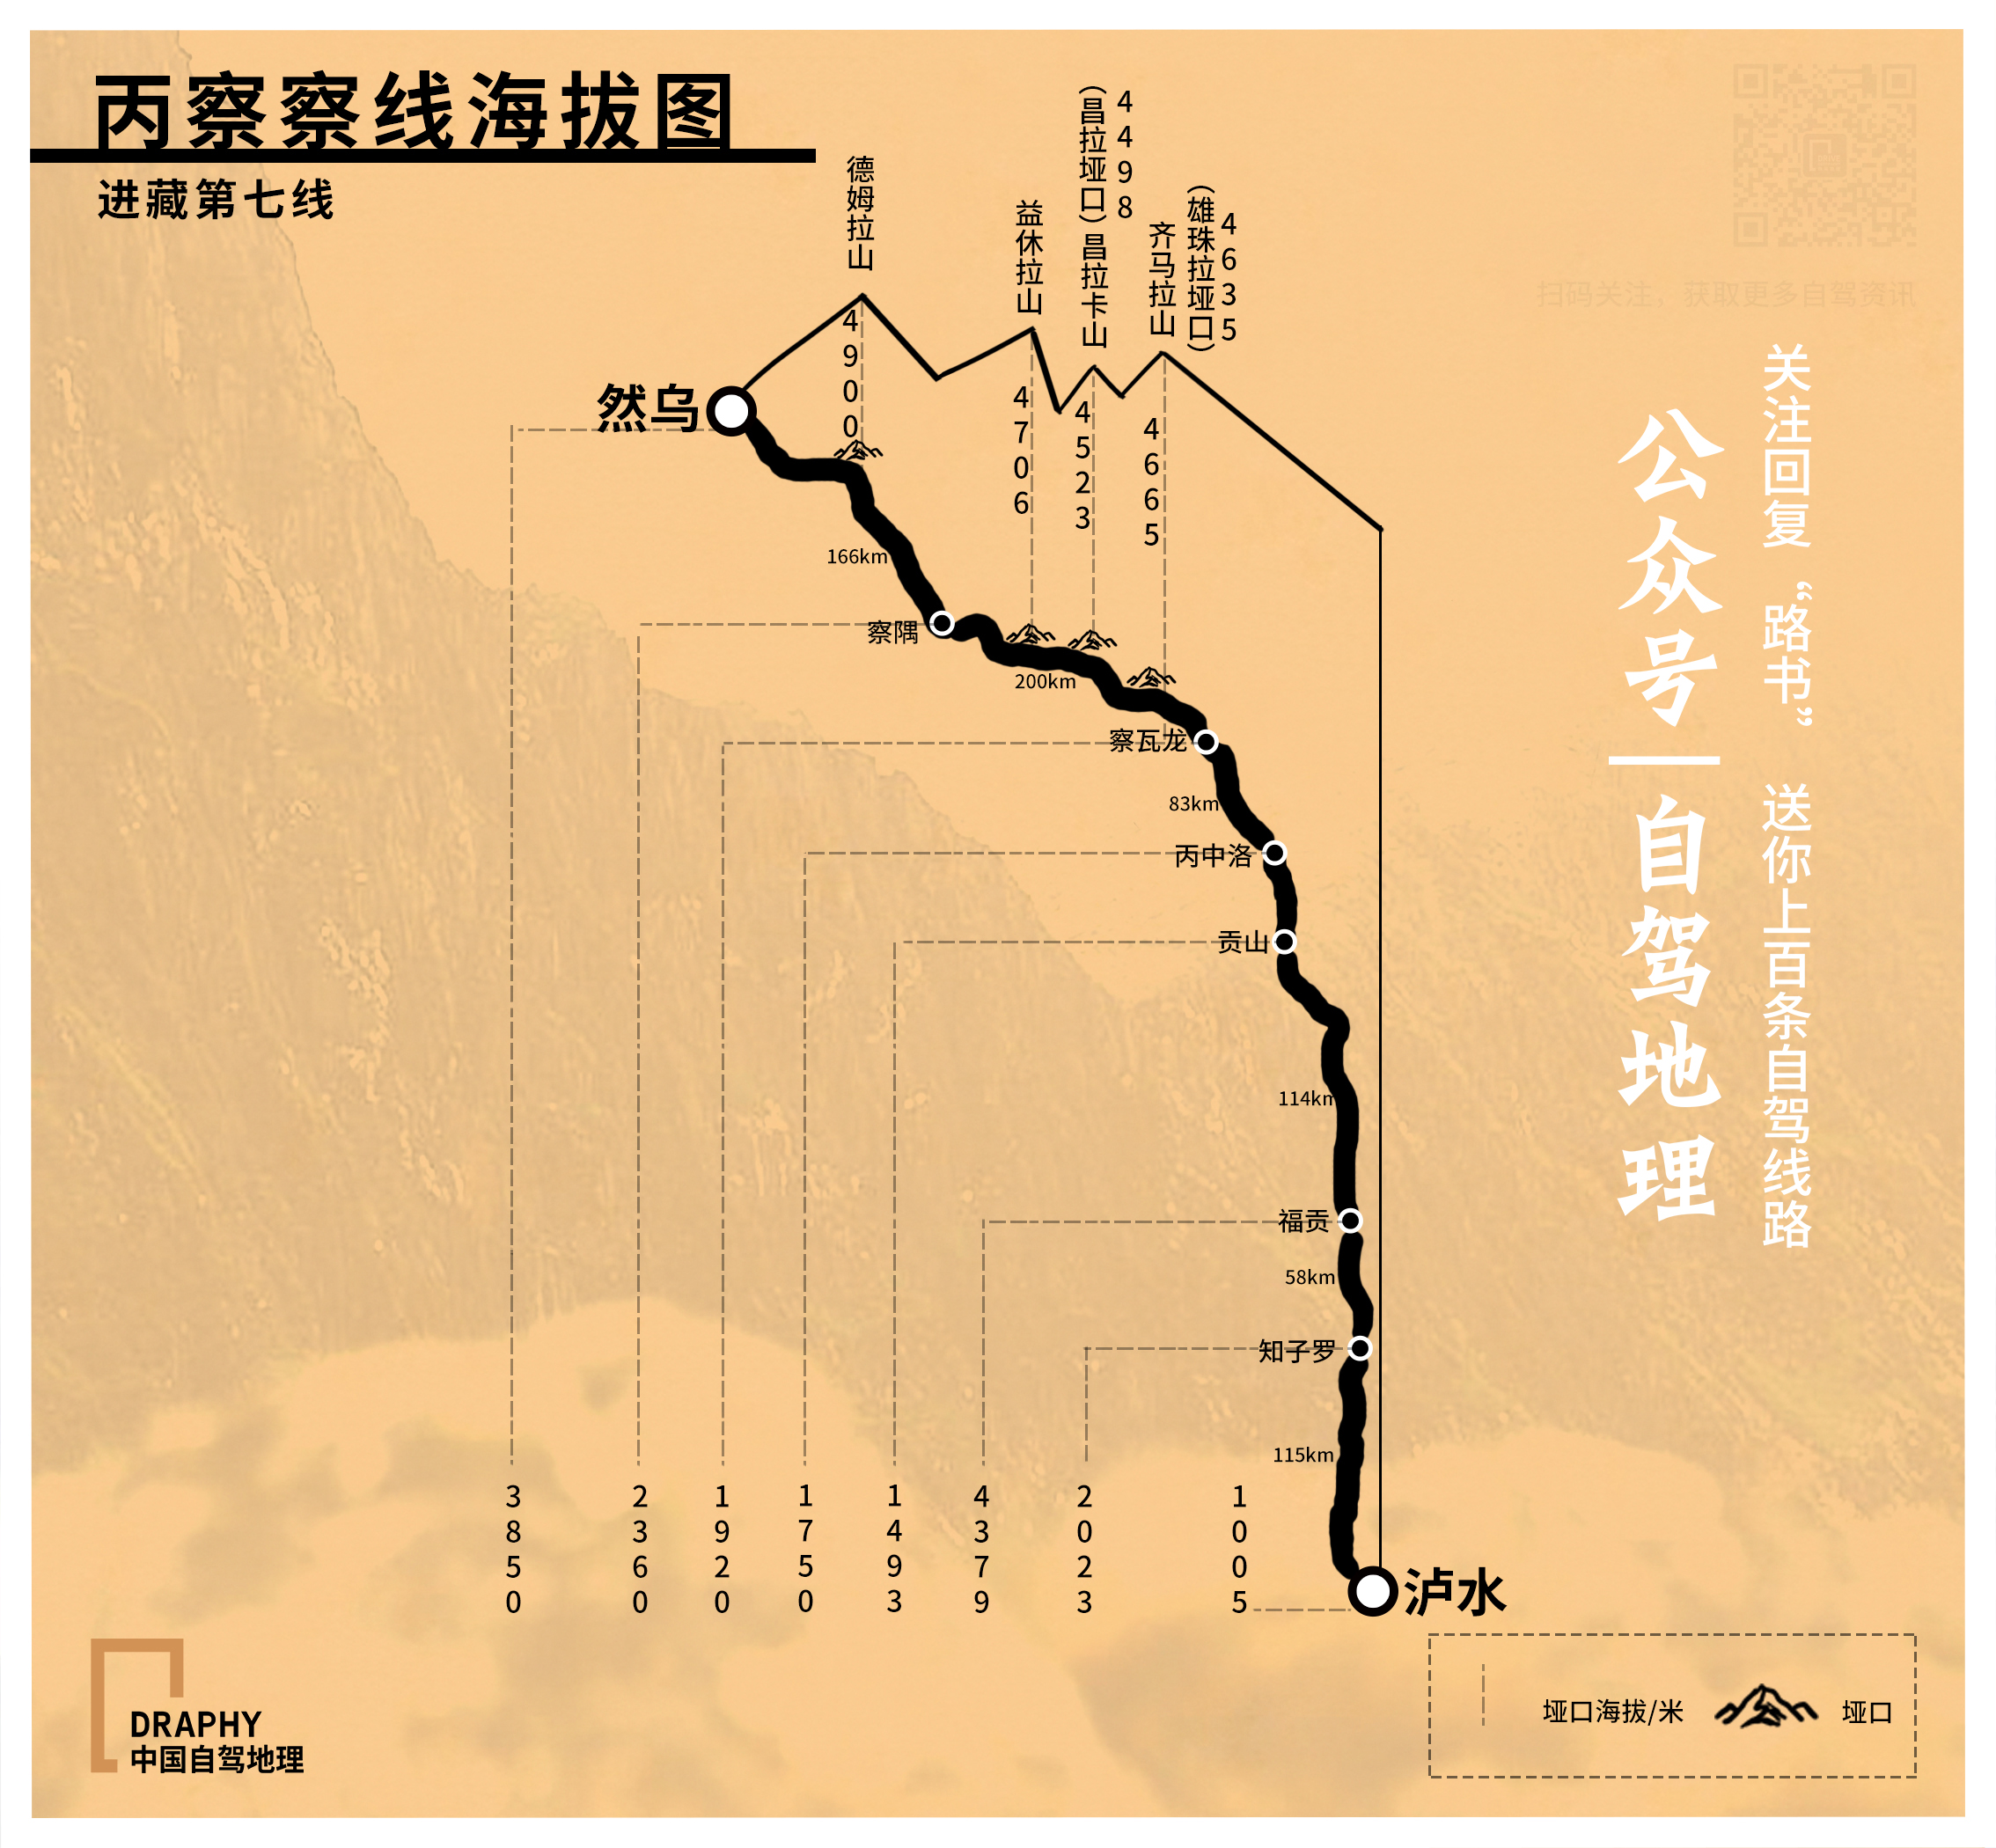 原创8条经典进藏线海拔图今天全部奉上值得收藏中国自驾地理